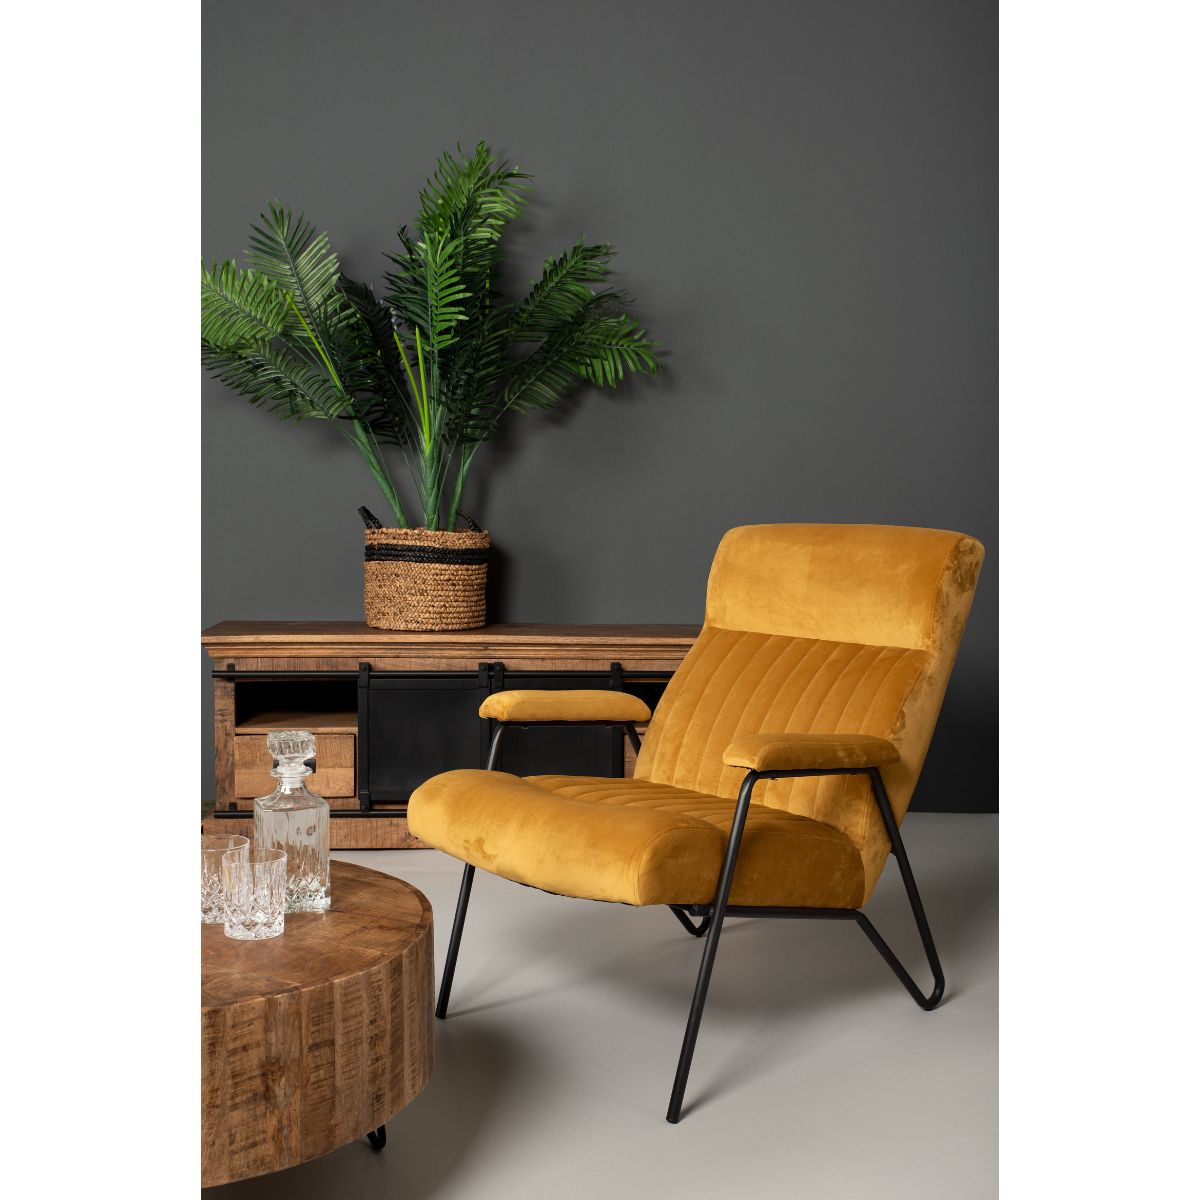 Stoer en stijlvol meubelstuk: Salontafel Melbourne - Transformeer je ruimte in 1-3 werkdagen.